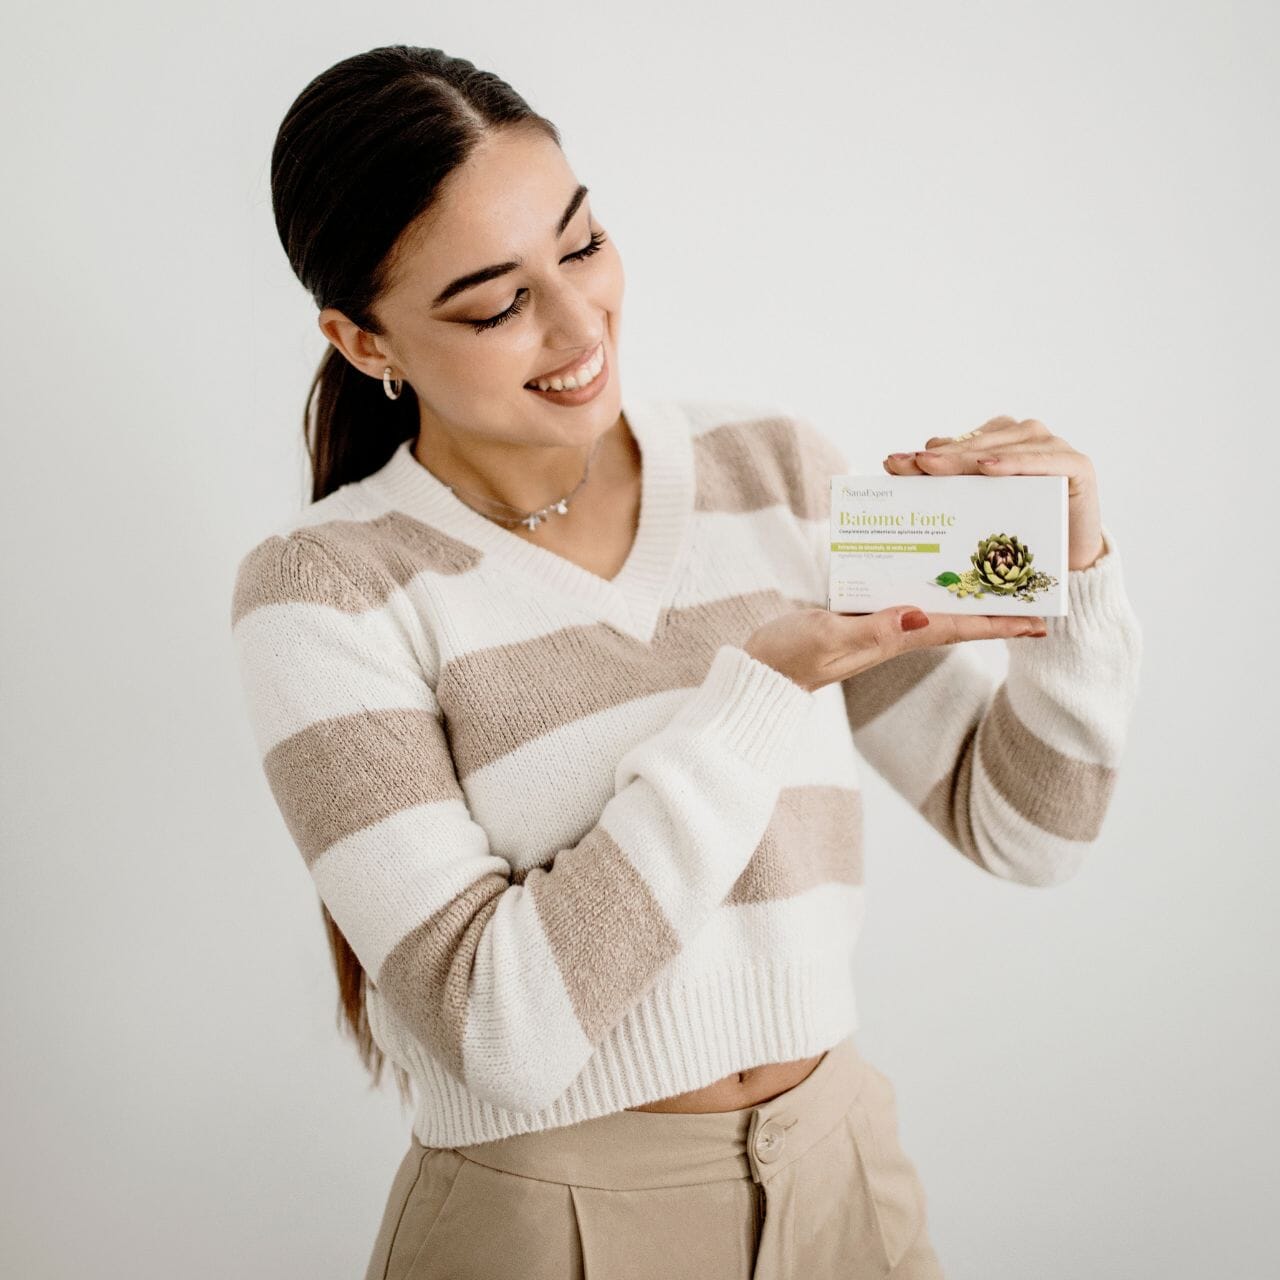 Lächelnde Frau in einem gestreiften Pullover hält die Baiome Forte Verpackung in ihrer Hand, Produktpräsentation mit persönlichem Touch.